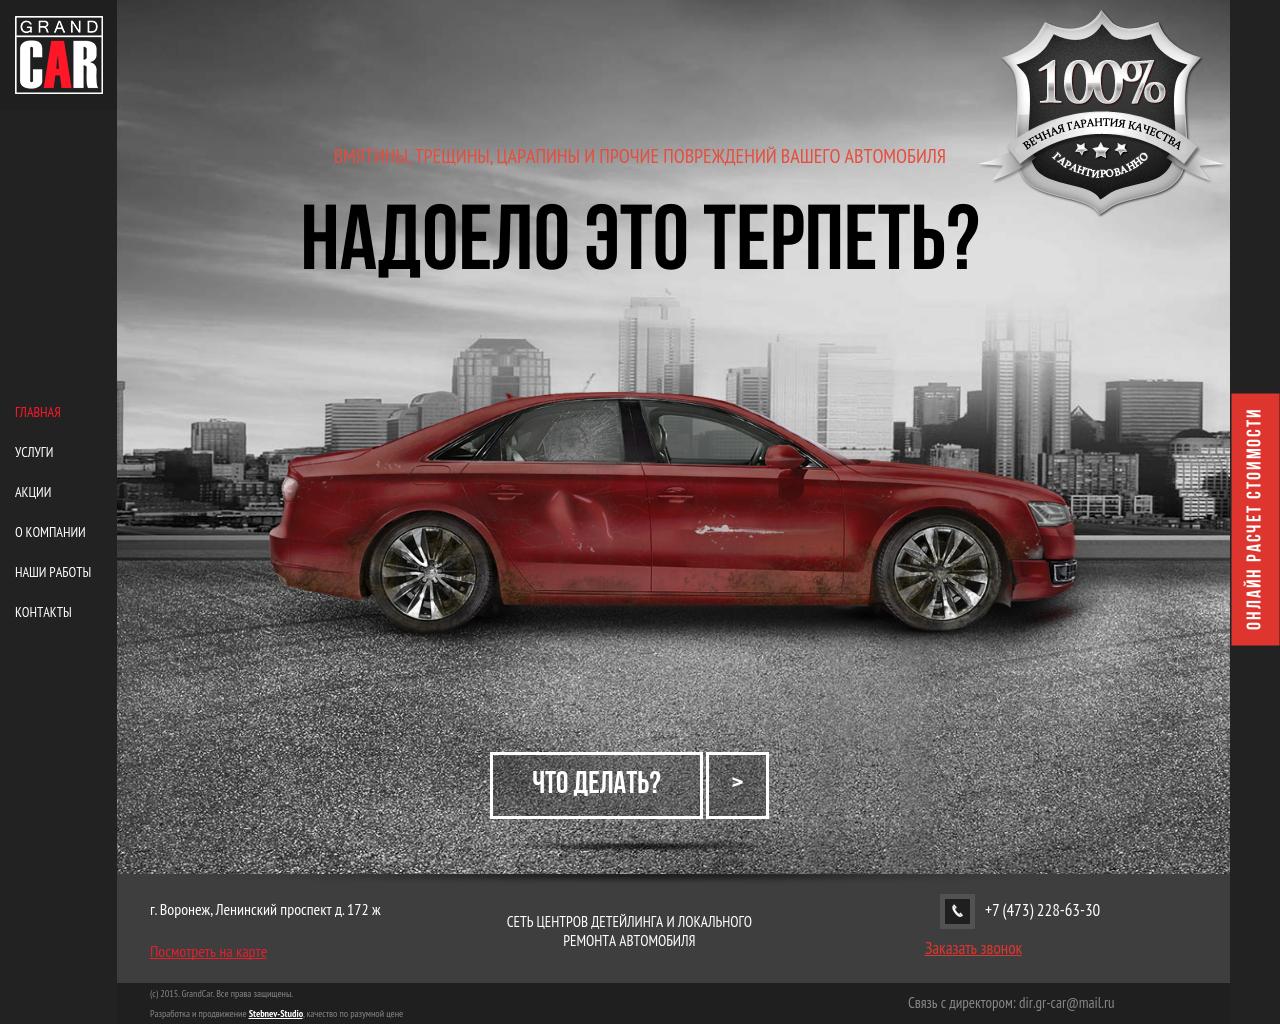 Изображение сайта gr-car.ru в разрешении 1280x1024